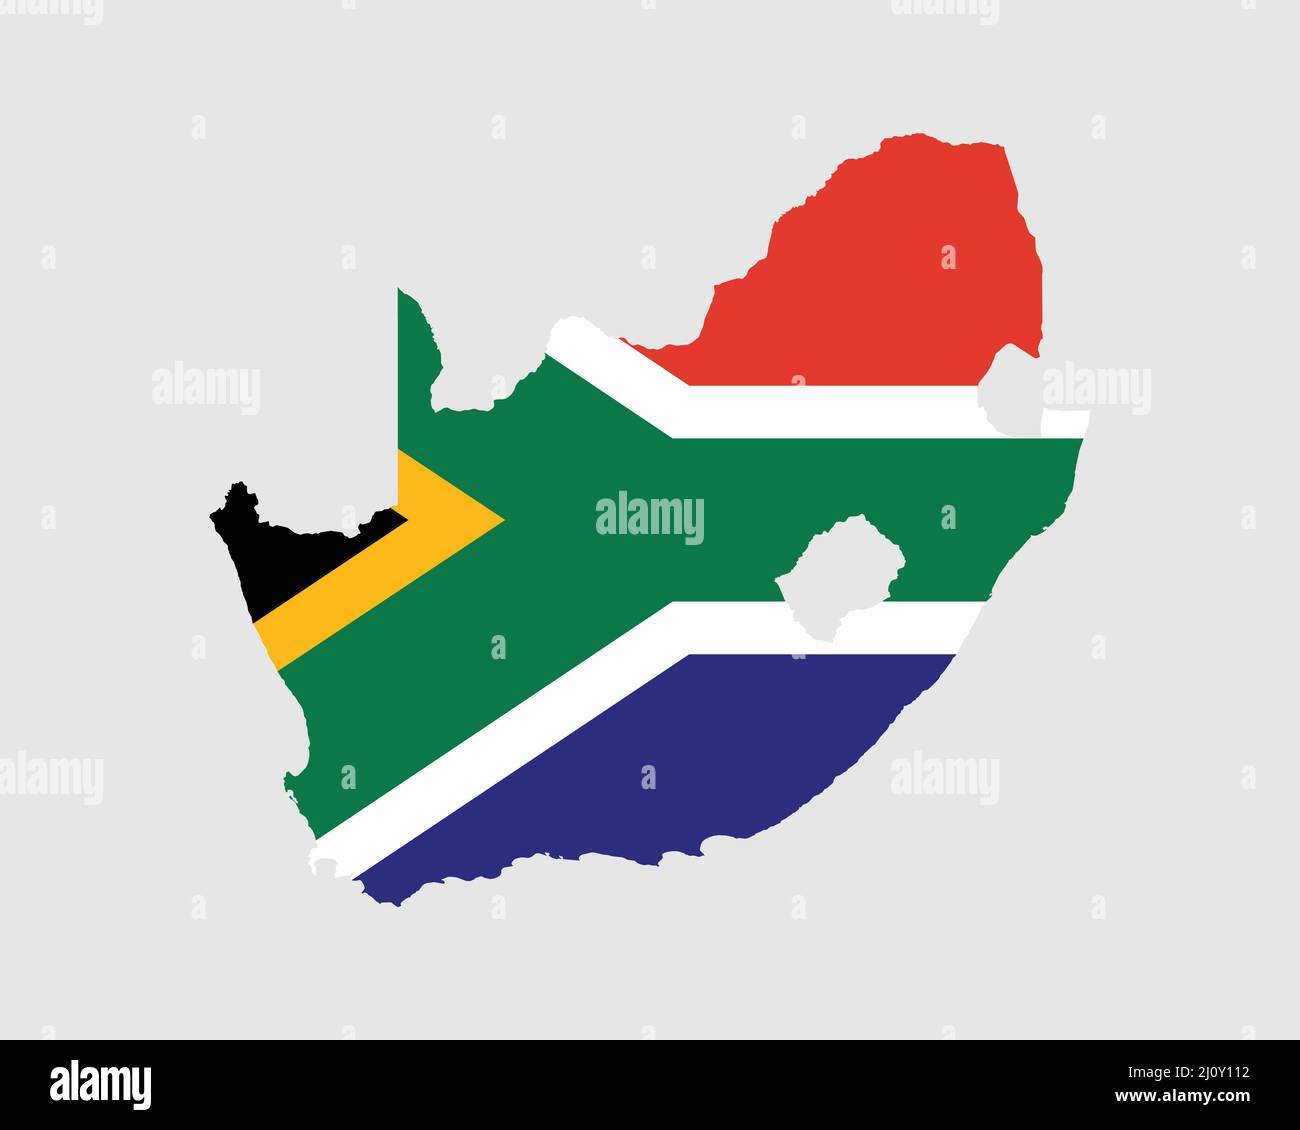 Mappa della bandiera del Sud Africa. Mappa della Repubblica del Sudafrica con la bandiera del paese sudafricano. Illustrazione vettoriale. Illustrazione Vettoriale